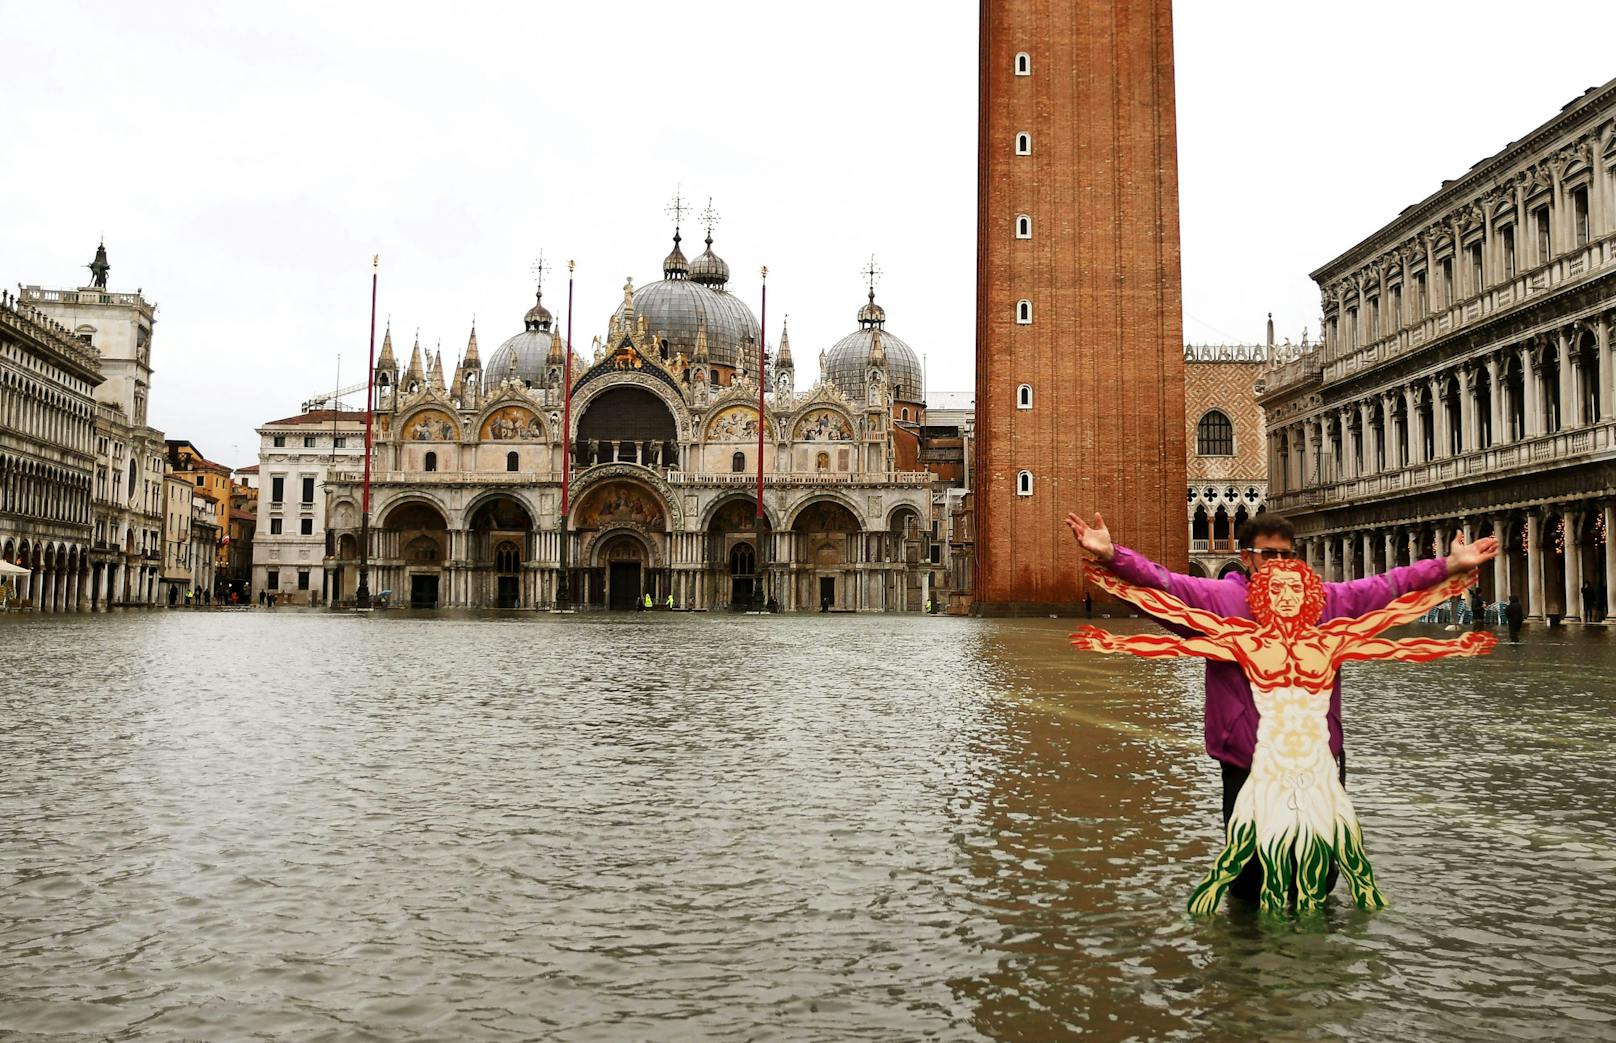 Weil das Dammsystem nicht rechtzeitig eingesetzt wurde, ist der Markusplatz in Venedig überschwemmt worden.